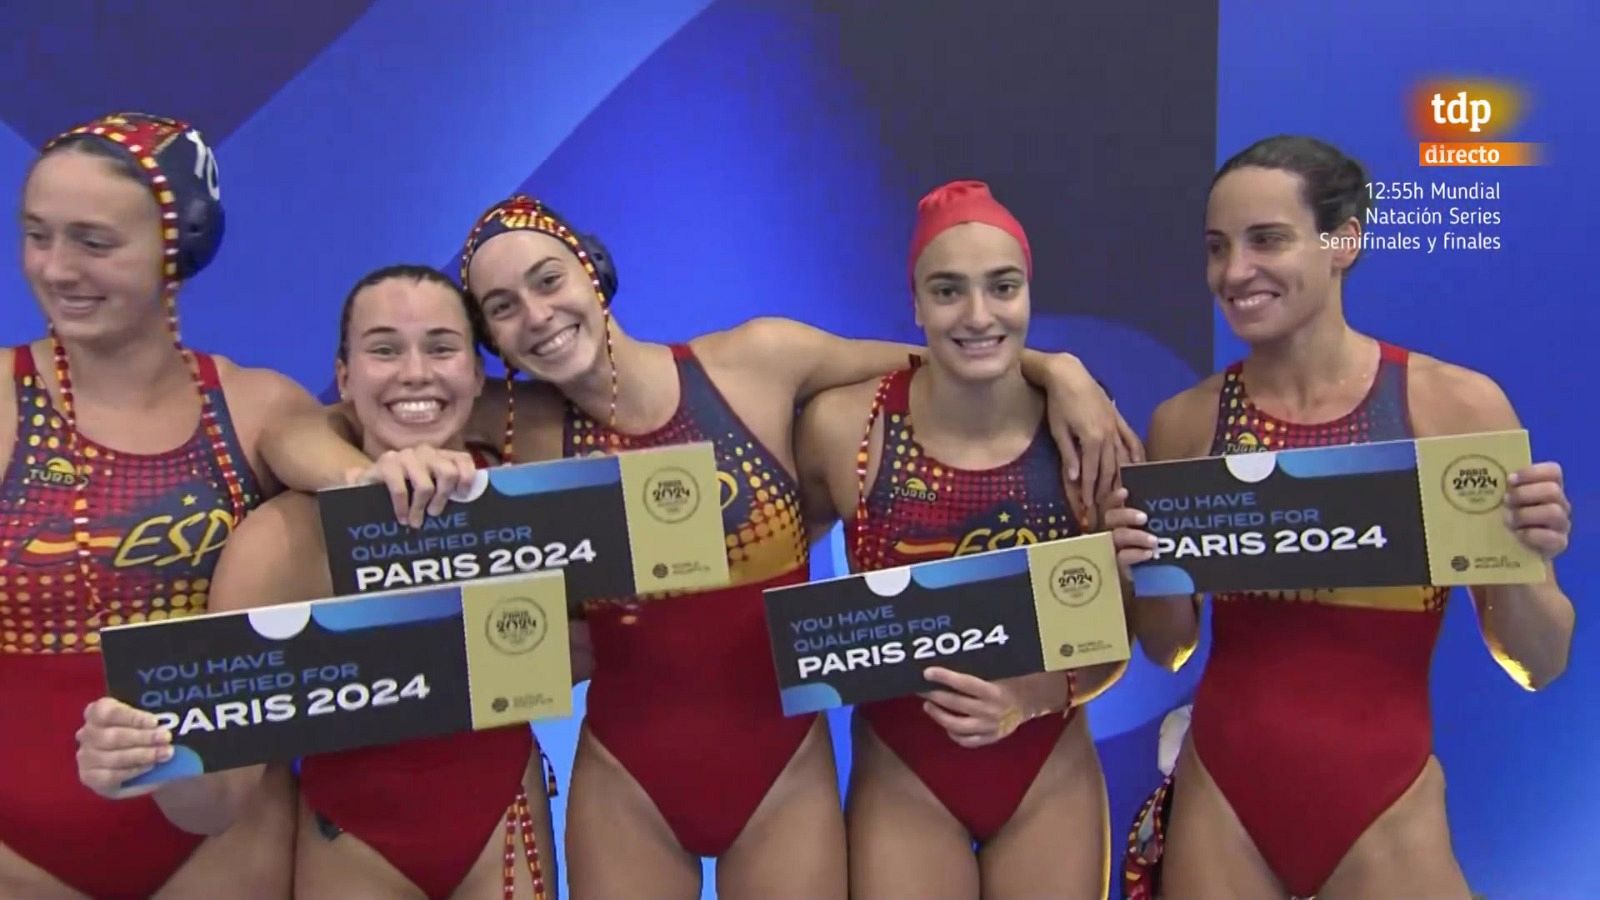 Resumen del Australia - España, Mundial femenino de waterpolo